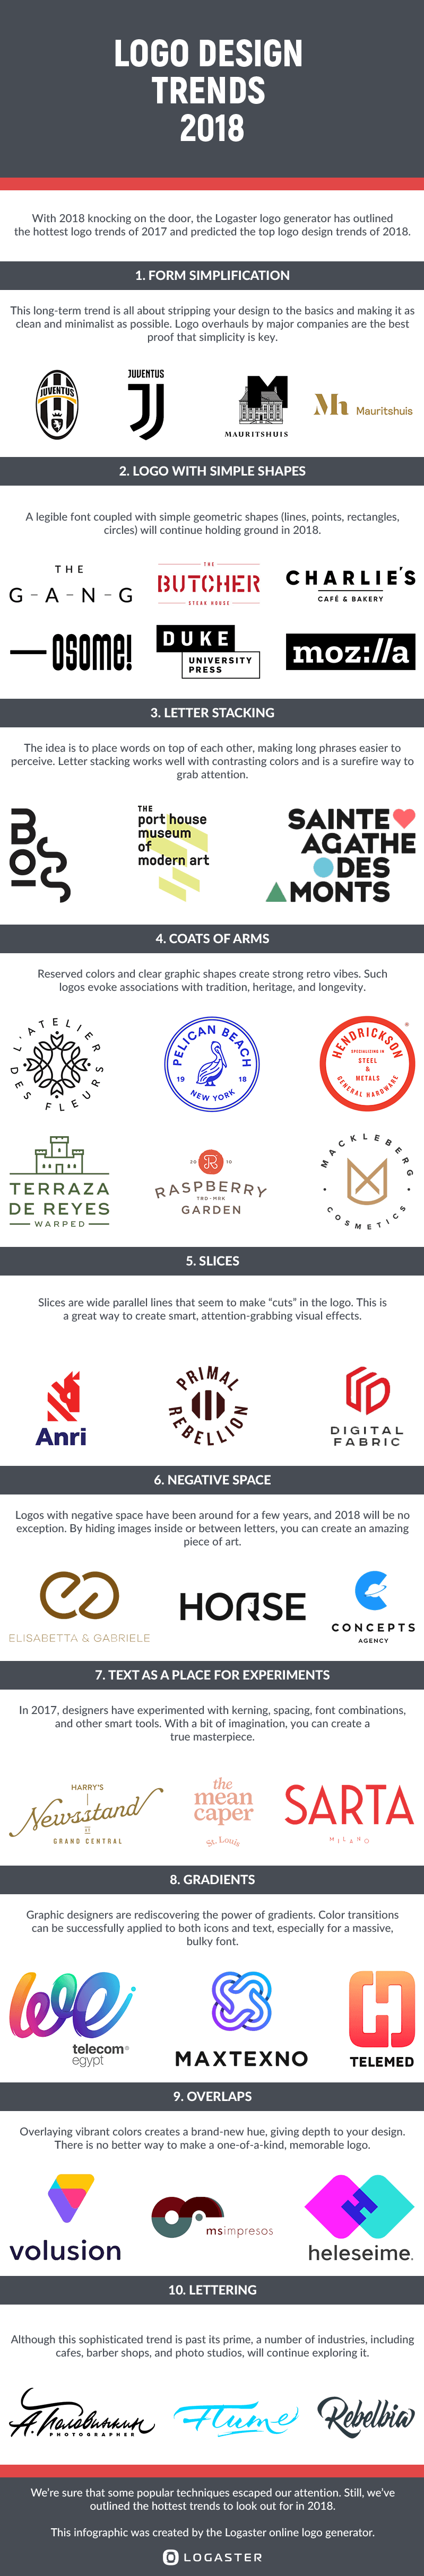 3 Letter Brand Logo - Logo Design Trends 2018. Logo Design Blog